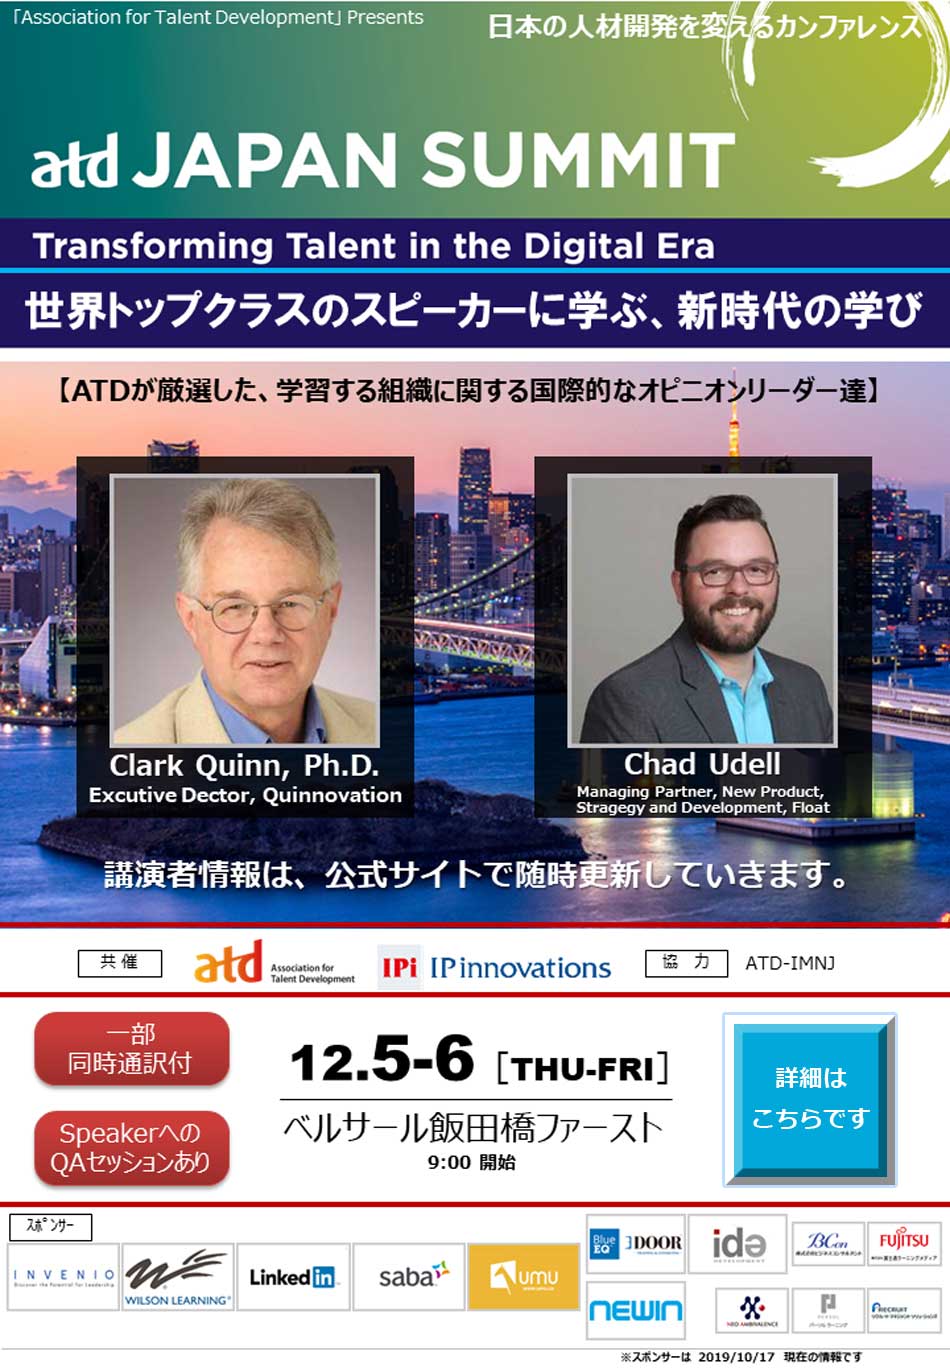 日本の人材開発を変えるカンファレンス。世界トップクラスのスピーカーに学ぶ新世代の学習する組織へのデジタルトランスフォーメーション、世界最大級の人材開発・組織開発団体「ATD」の国際カンファレンス「ATD 2019 Japan Summit」 会期：2019年12月5日（木）-12月6日（金）9：00 開始　会場：ベルサール飯田橋ファースト　共催：Association for Talent Development、株式会社IPイノベーションズ